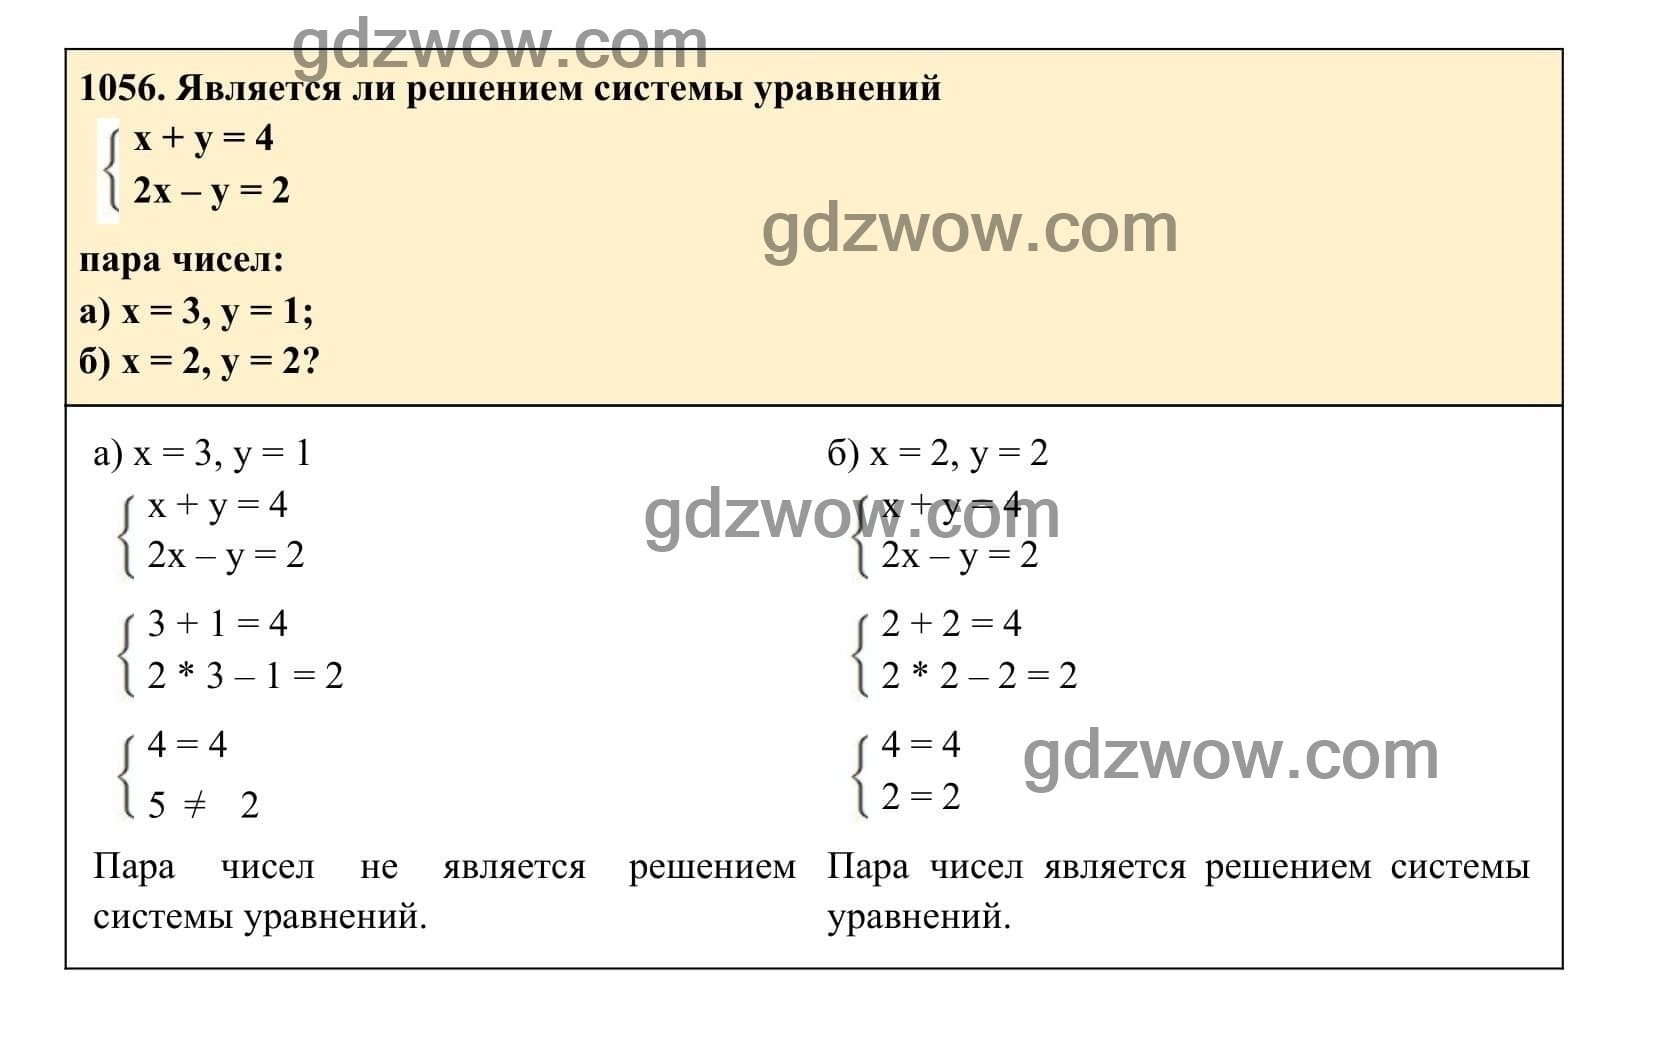 Упражнение 1056 - ГДЗ по Алгебре 7 класс Учебник Макарычев (решебник) - GDZwow